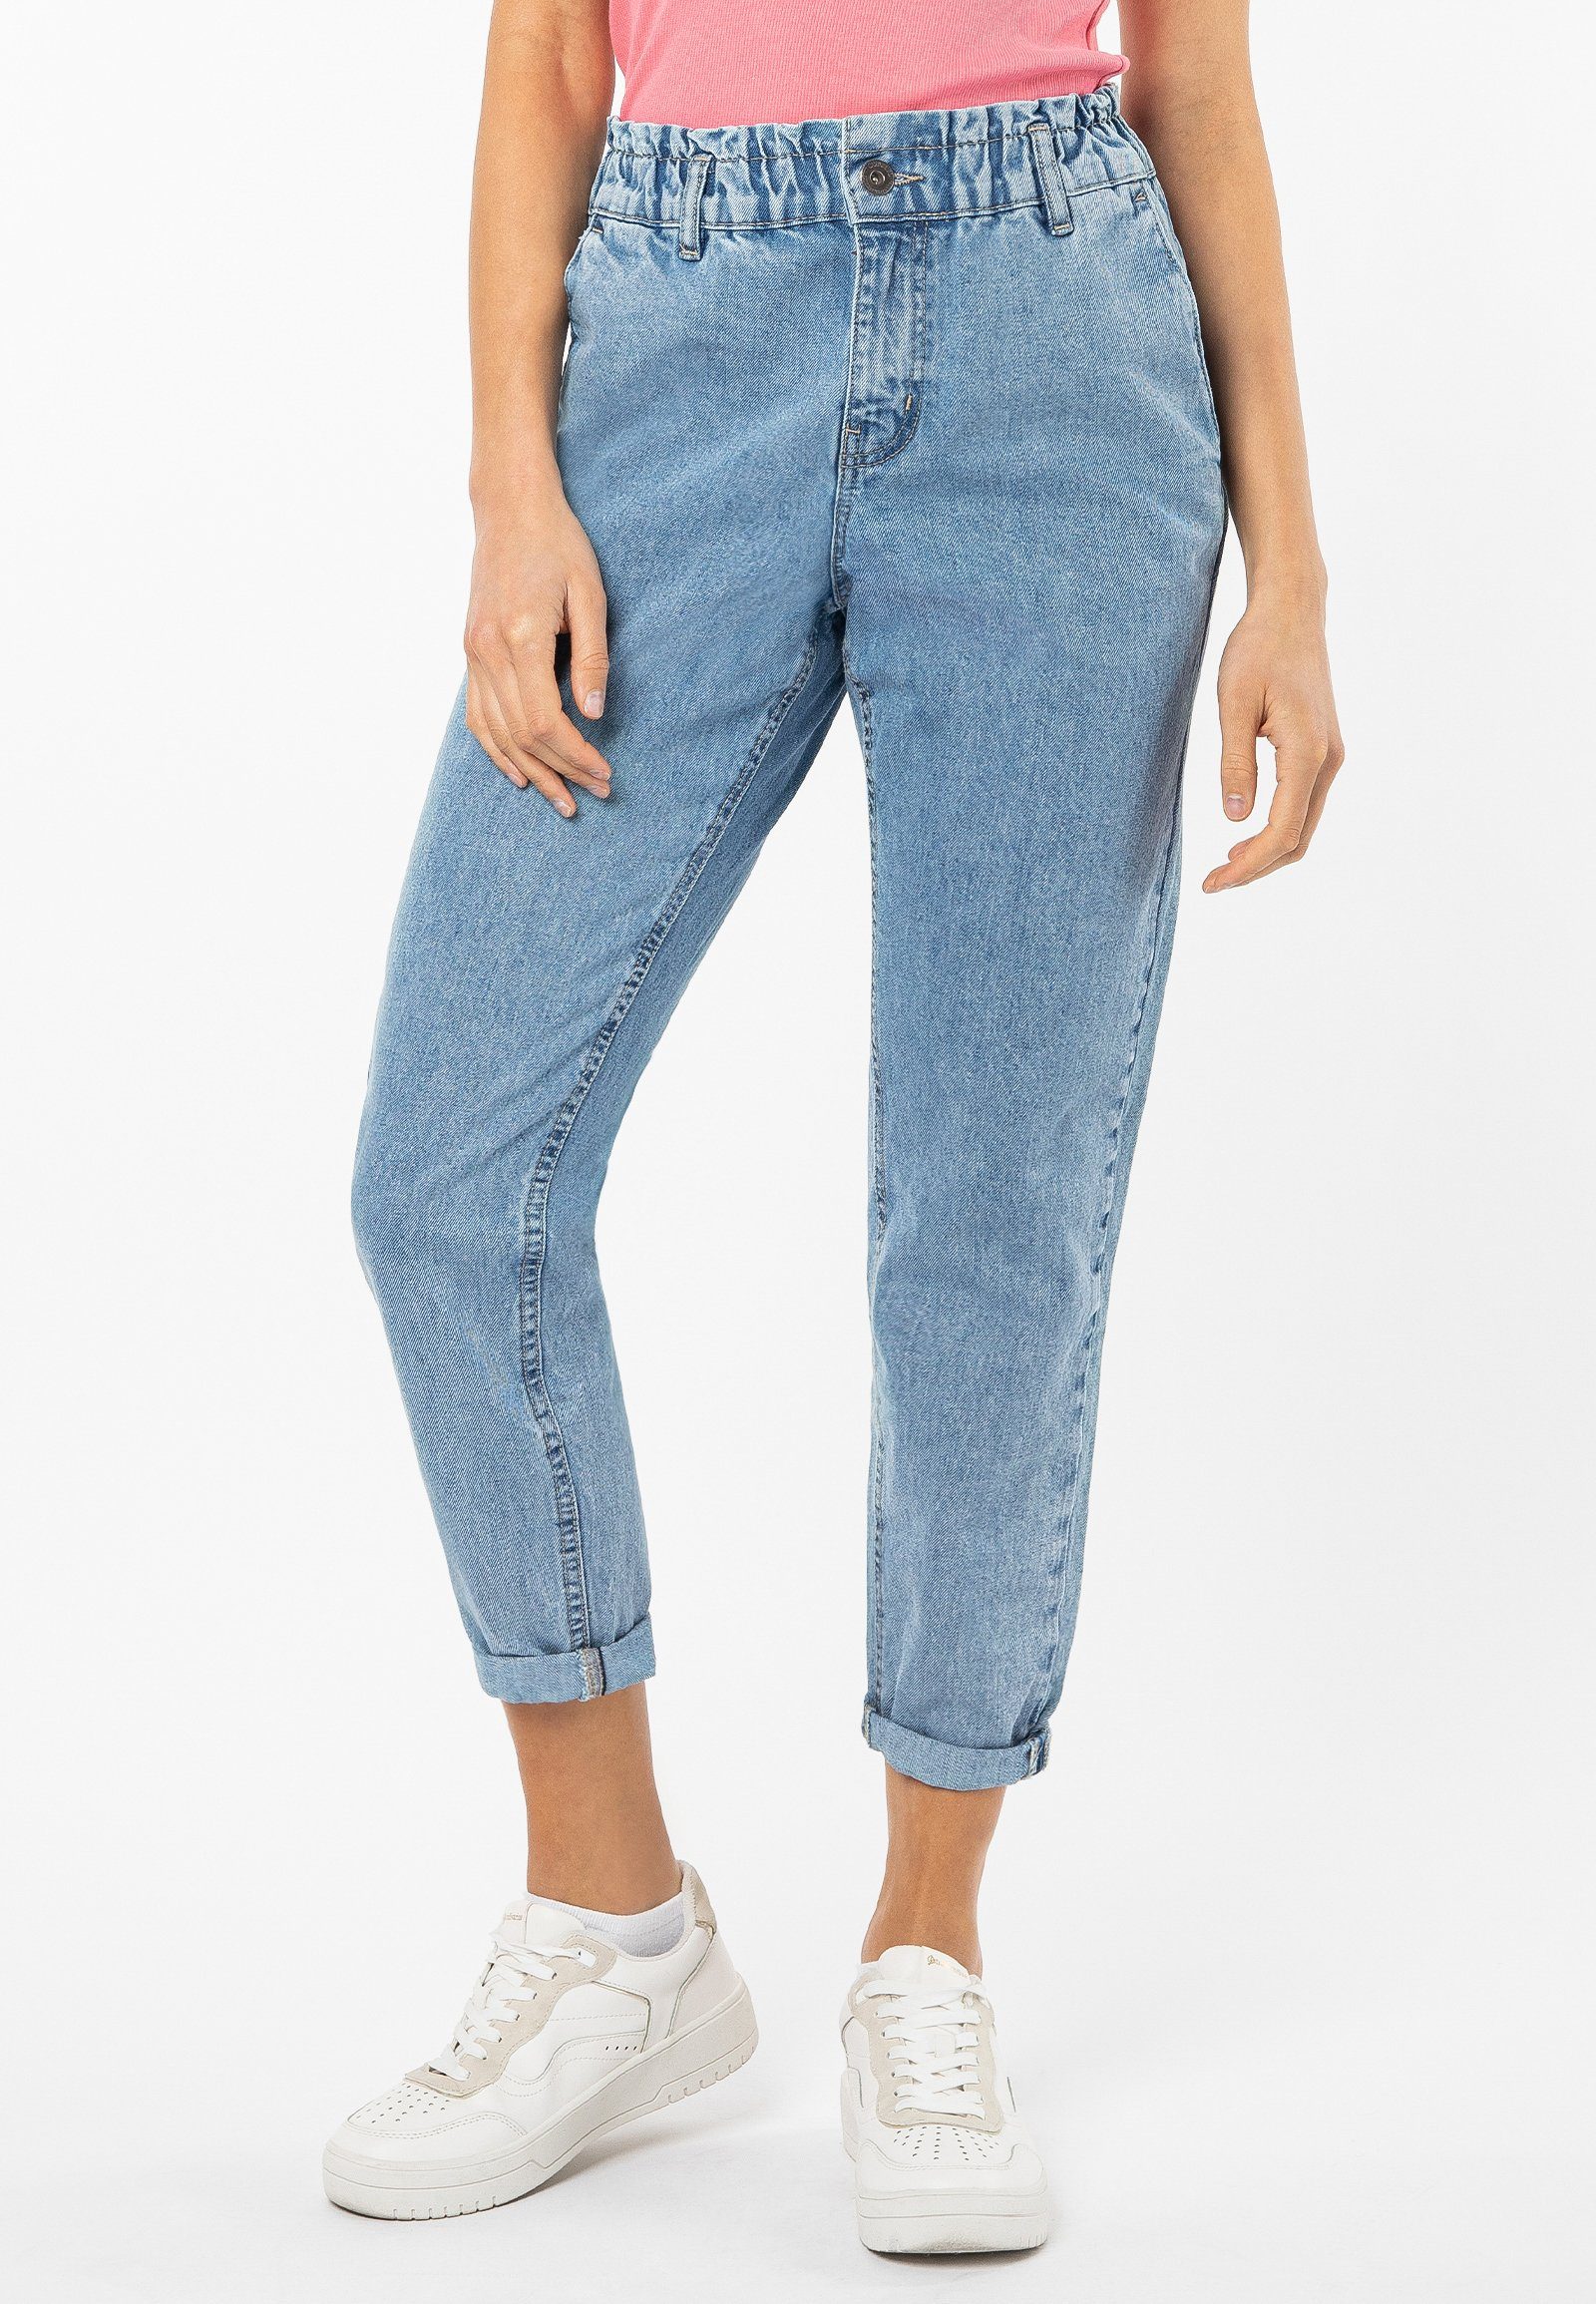 SUBLEVEL High-waist-Jeans Paperbag Denim Jeans light-blue